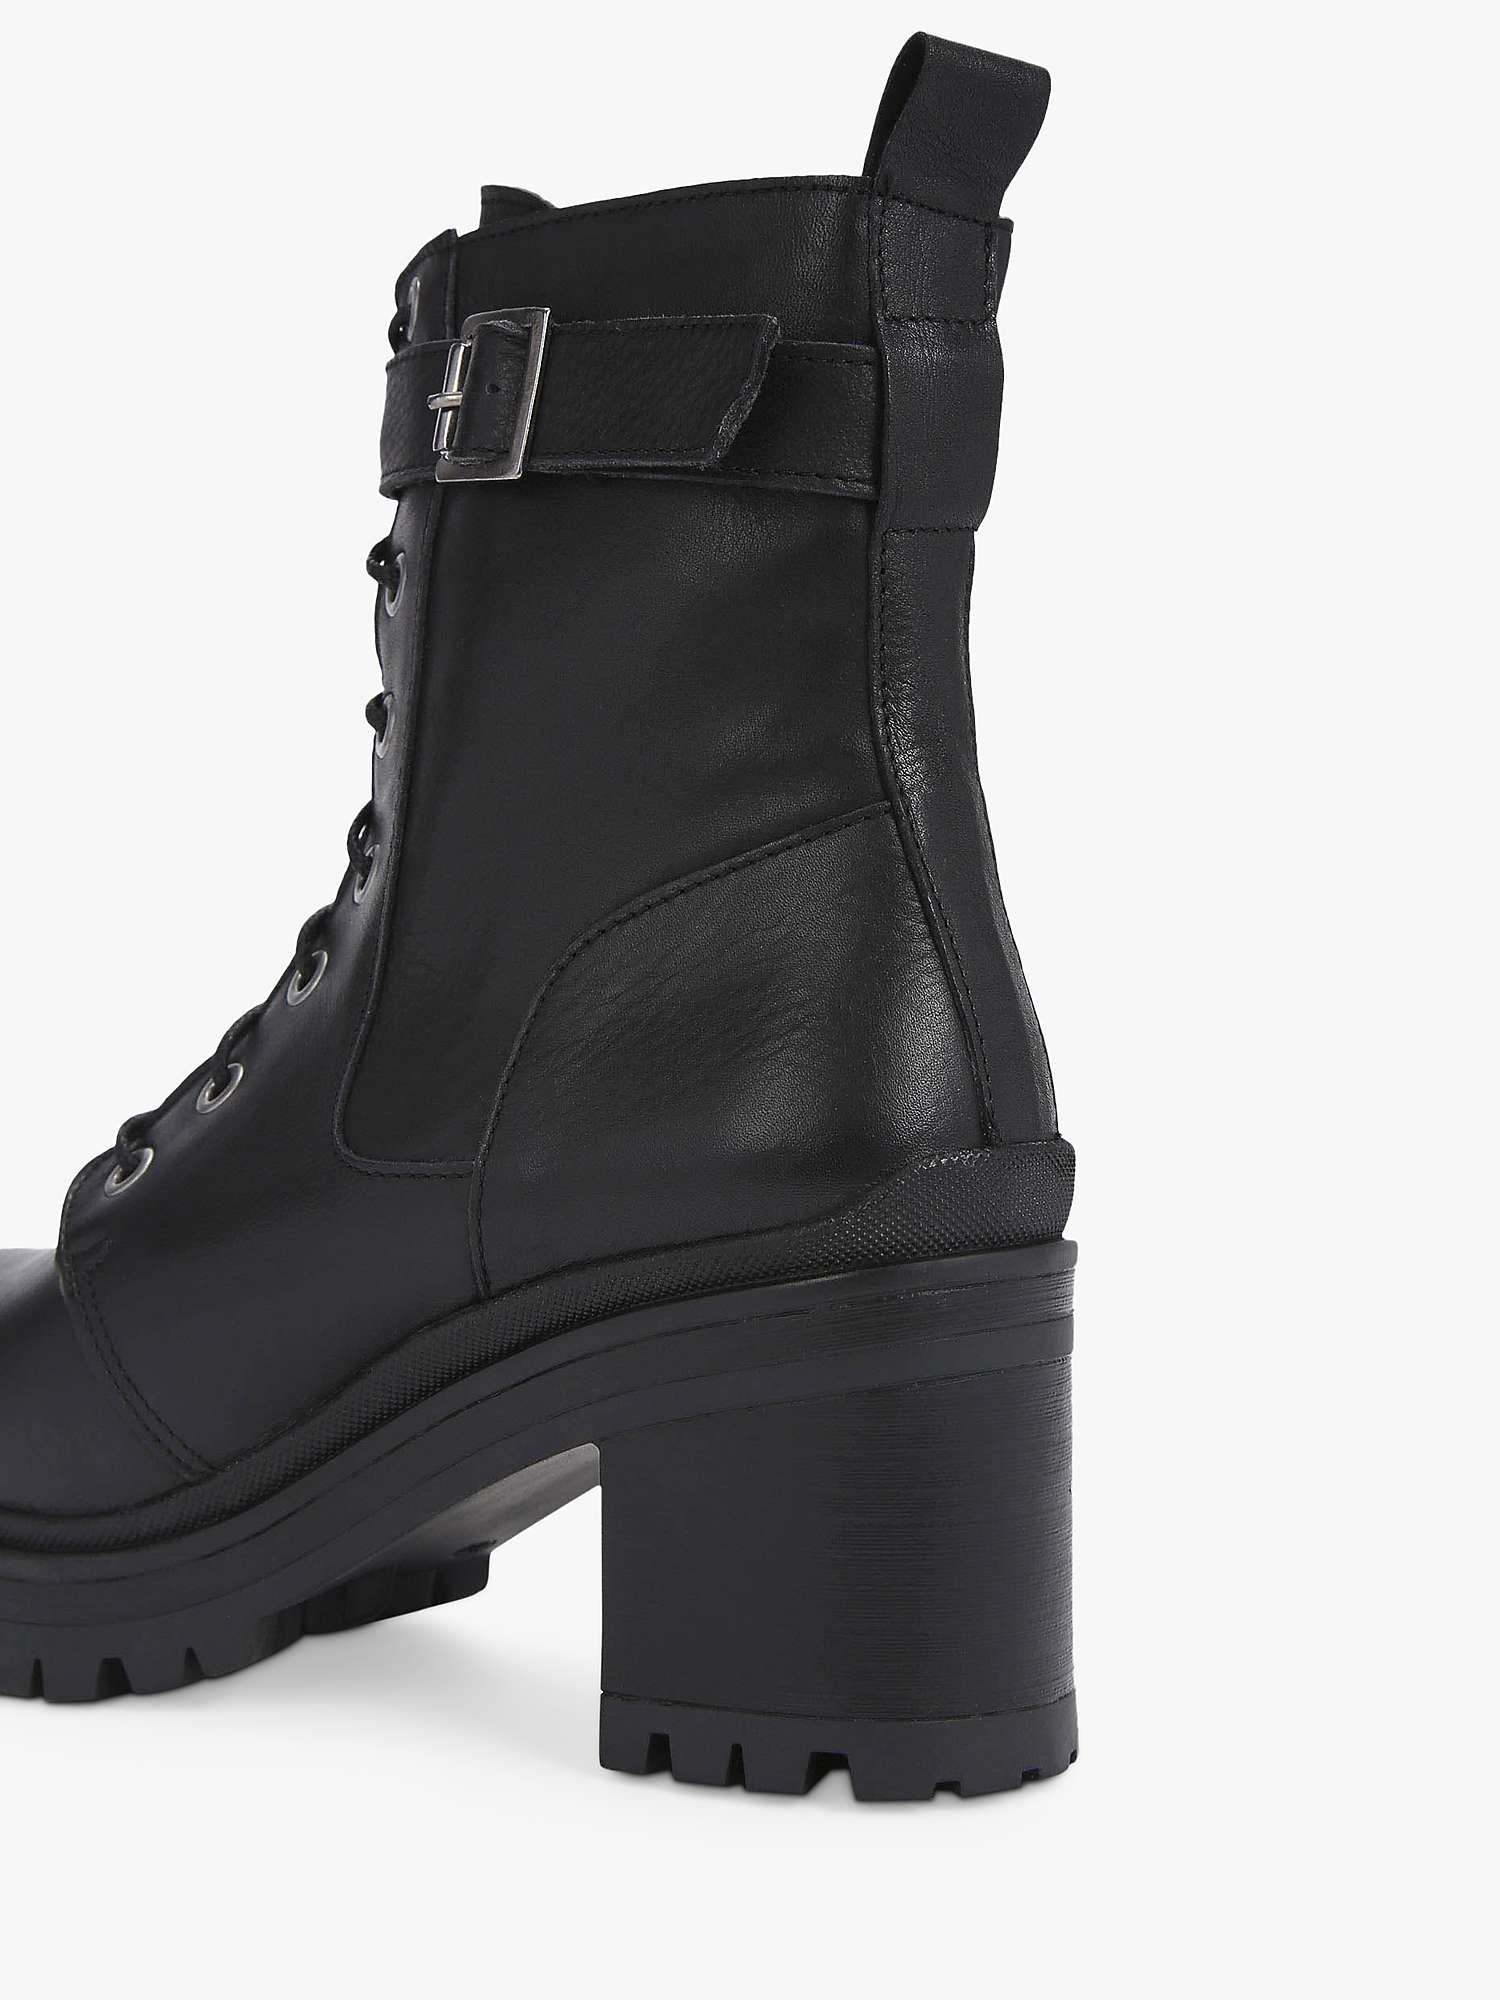 Buy Carvela Secure 2 Leather Biker Boots, Black Online at johnlewis.com